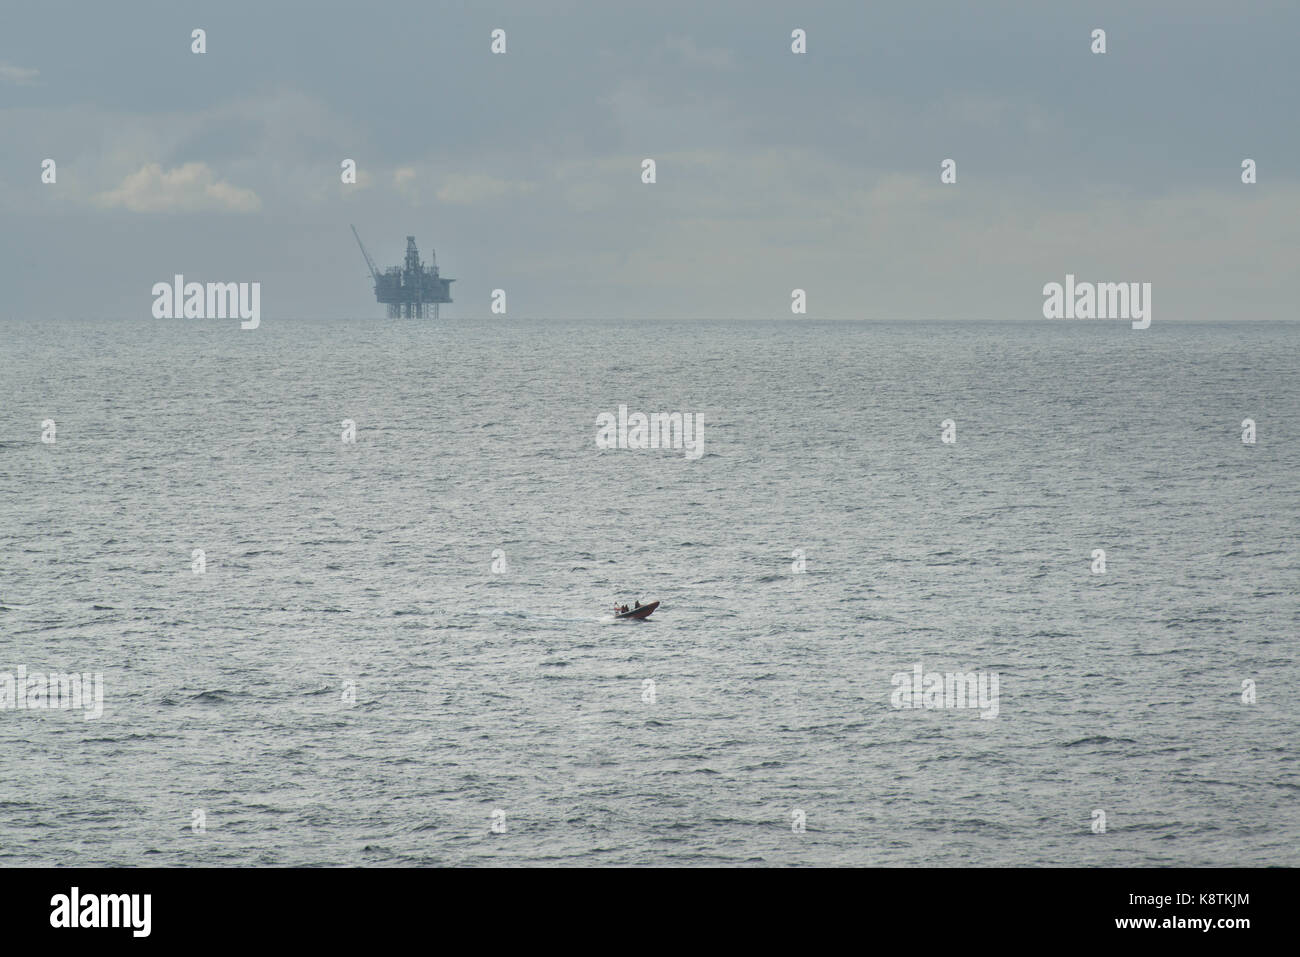 La vie de la RNLI embarcation de sauvetage, bateau naviguant dans la mer du Nord, avec une plate-forme de pétrole et de gaz dans la distance. crédit : lee ramsden / alamy Banque D'Images